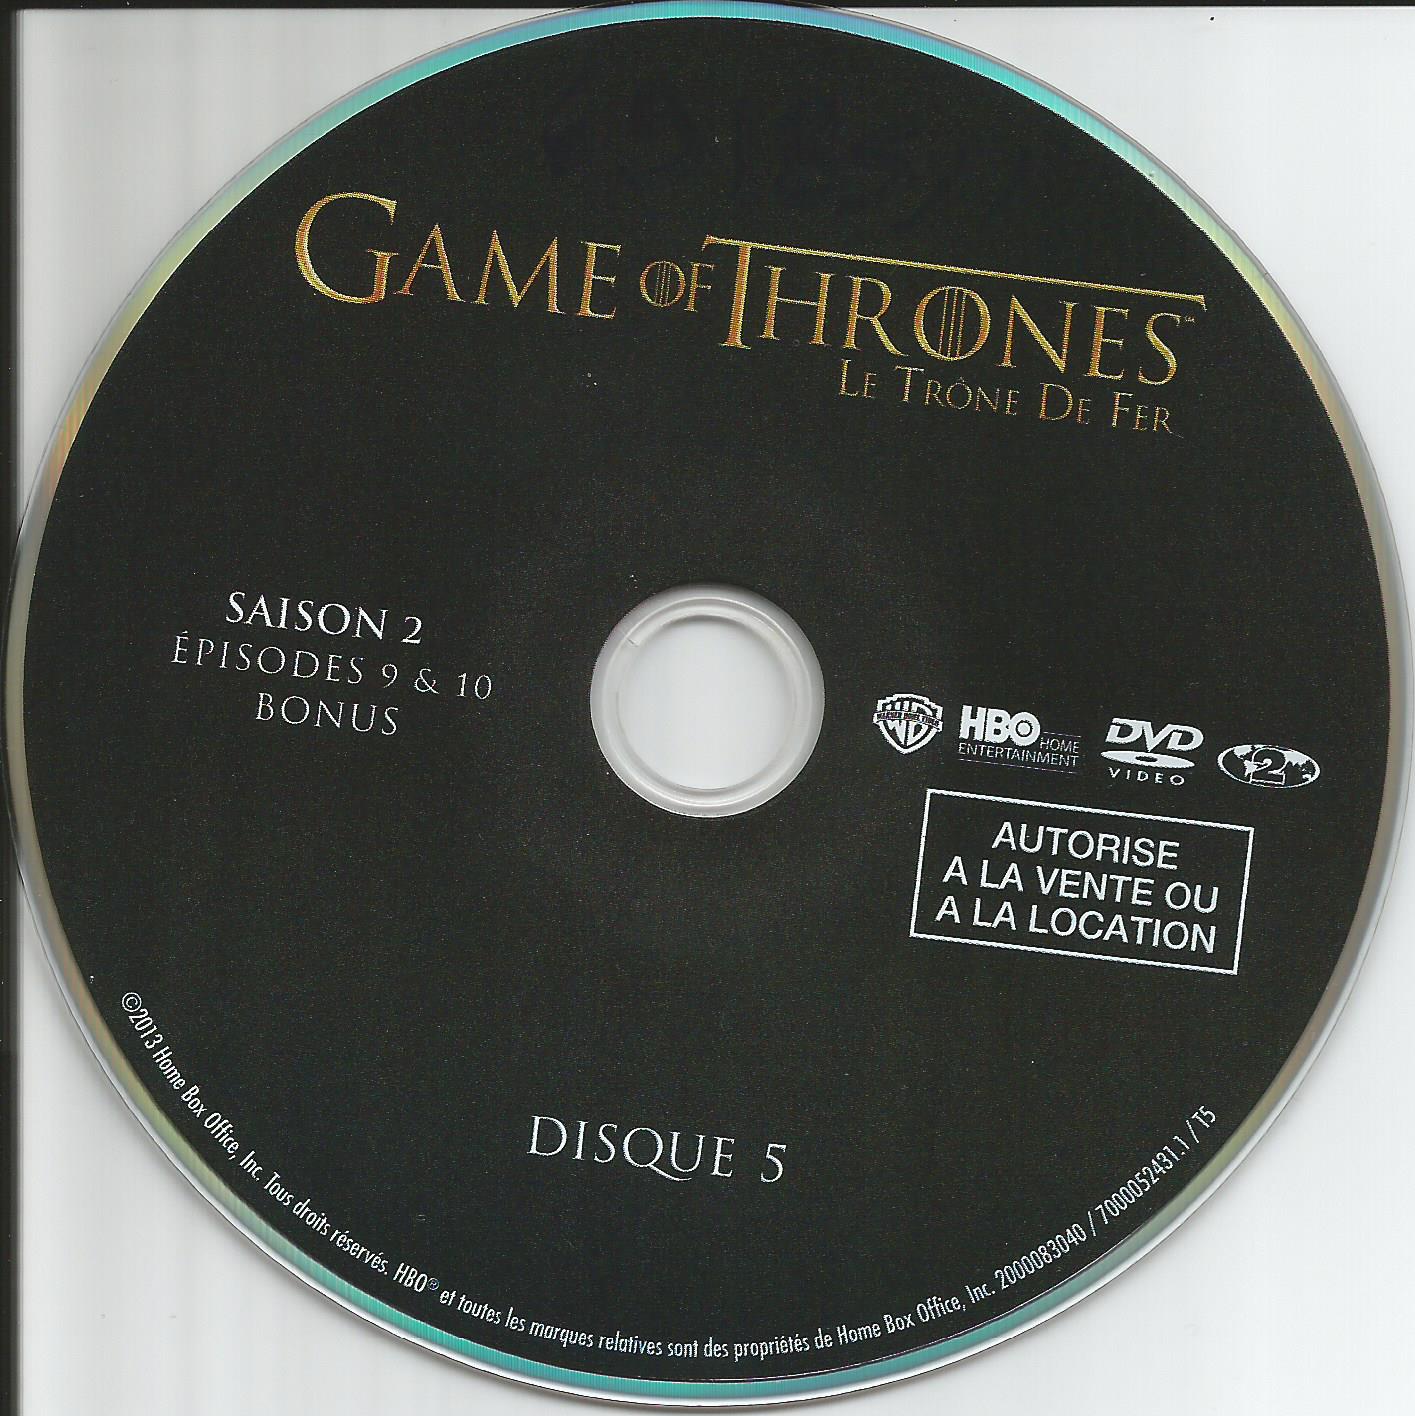 Game of thrones (le trone de fer) Saison 2 DVD 5